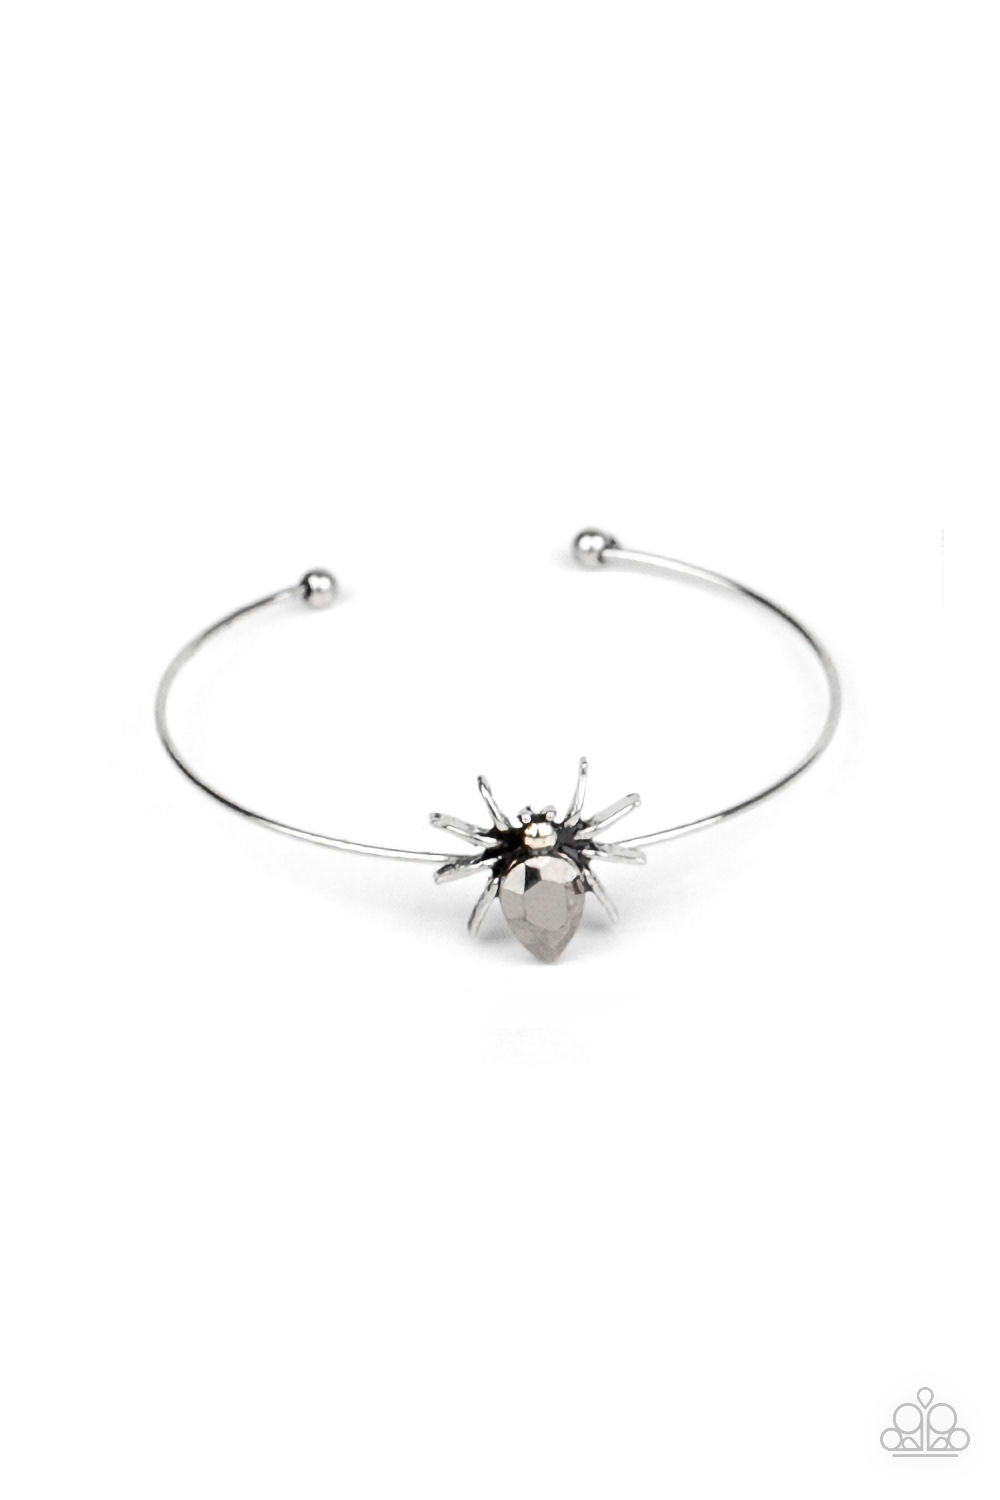 Bracelet - Starlet Shimmer Spiders - Hematite